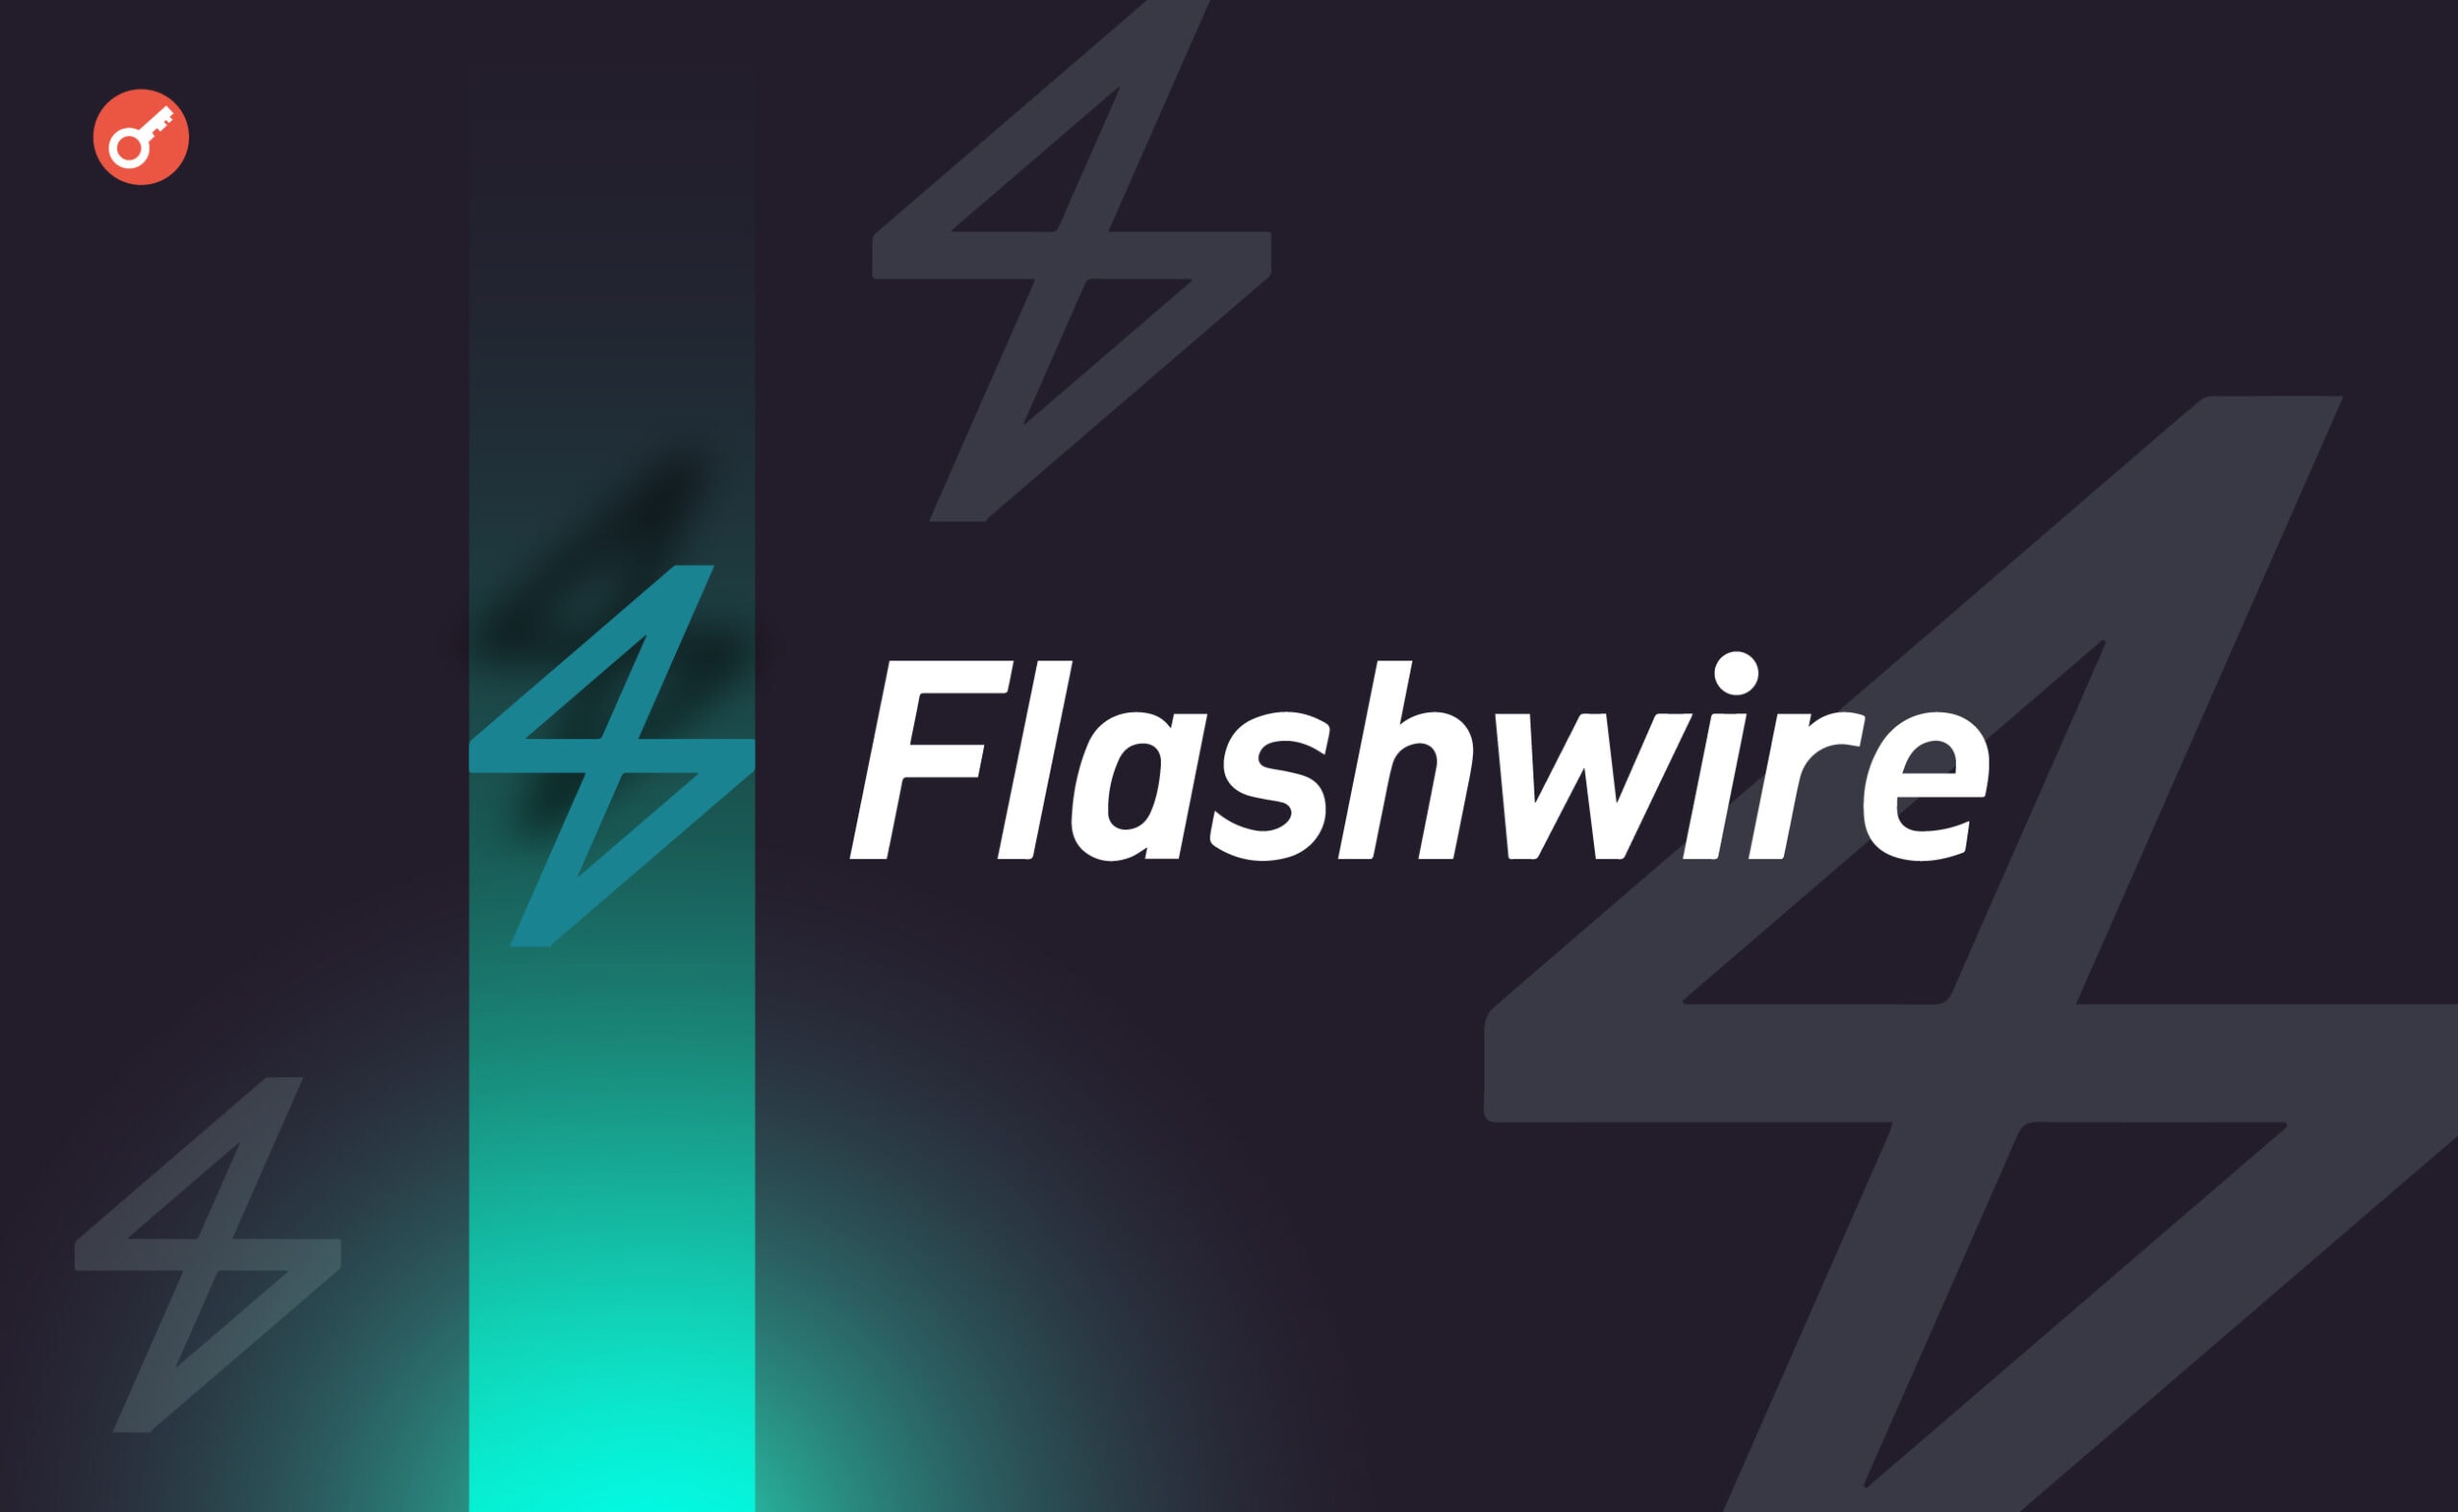 Flashwire Group залучила $10 млн інвестицій. Головний колаж новини.